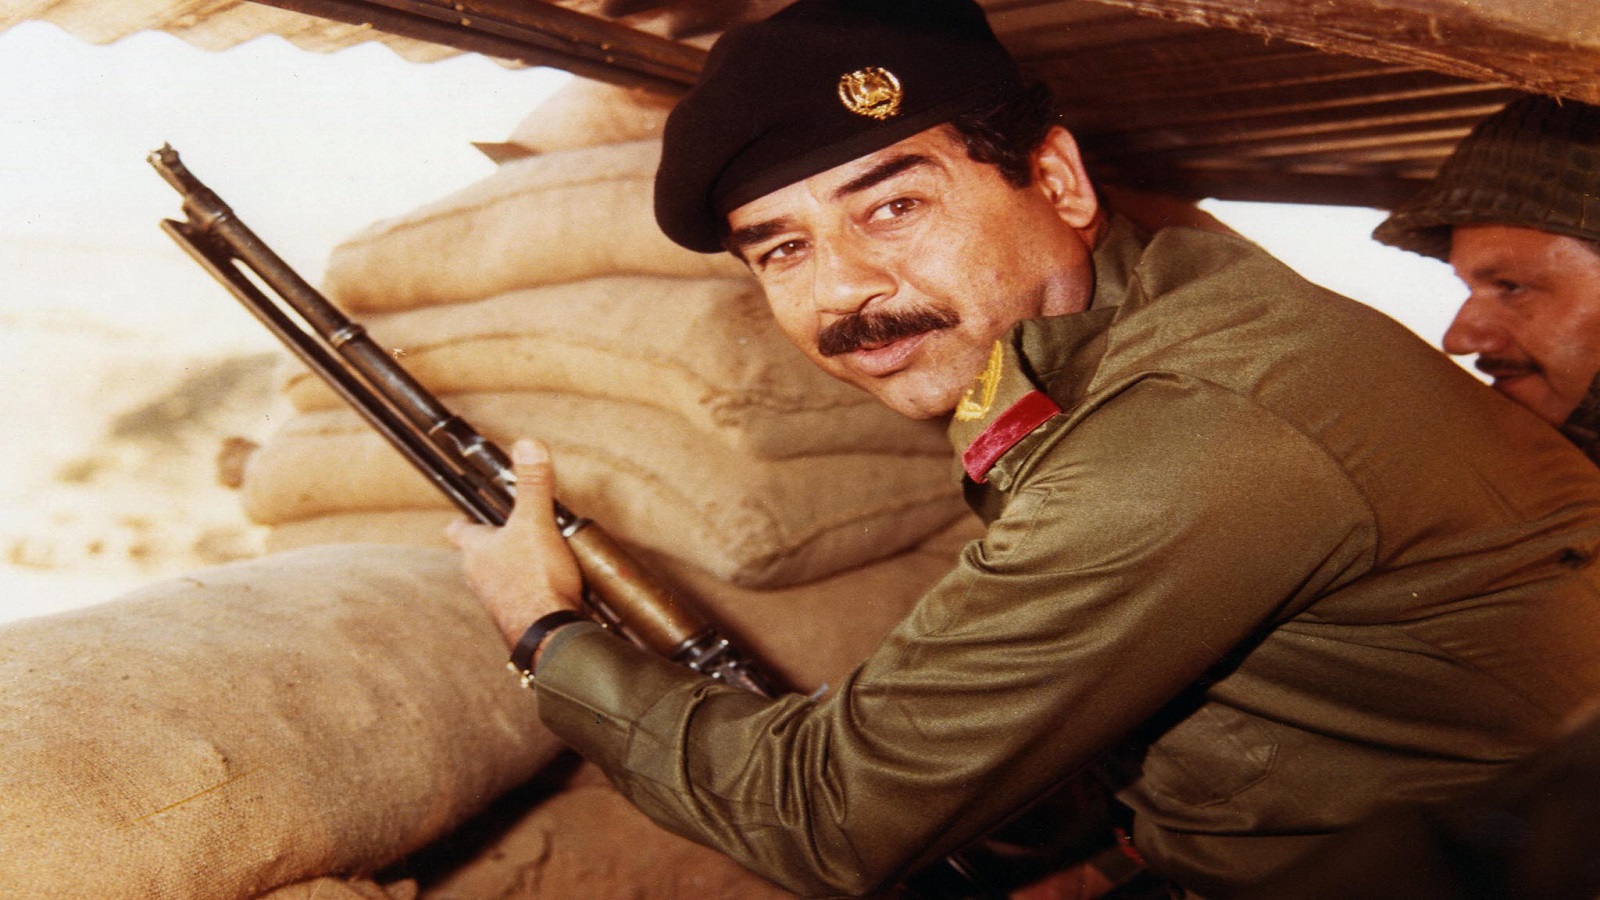 عن ثقافة التبعيث التي أنتجت صدام حسين